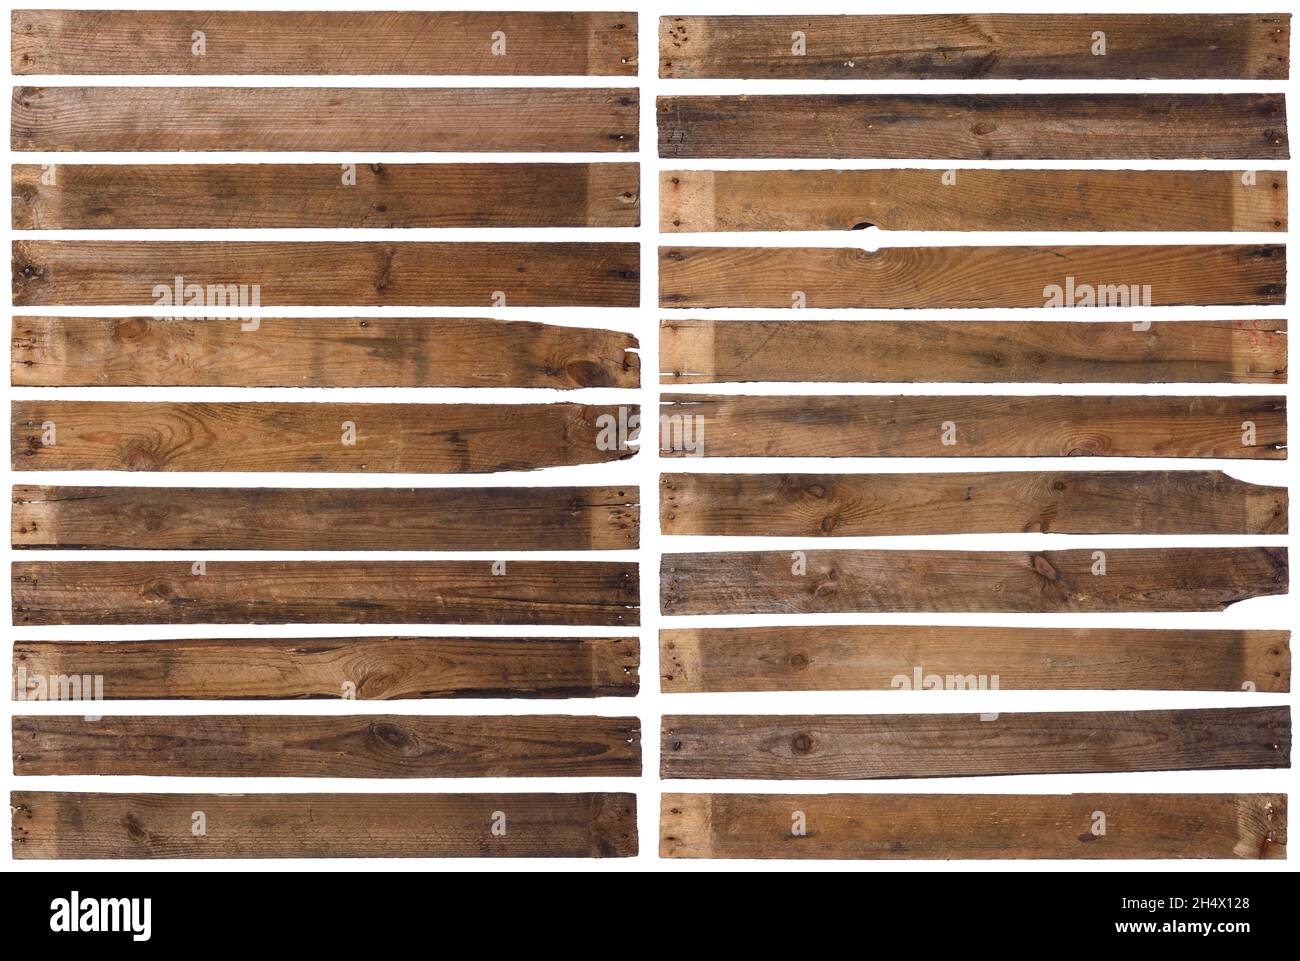 Anciennes planches en bois isolées sur fond blanc.Ensemble de 22 long bois rustiques et abîmé avec clous rouillés, pointu et très détaillé. Banque D'Images